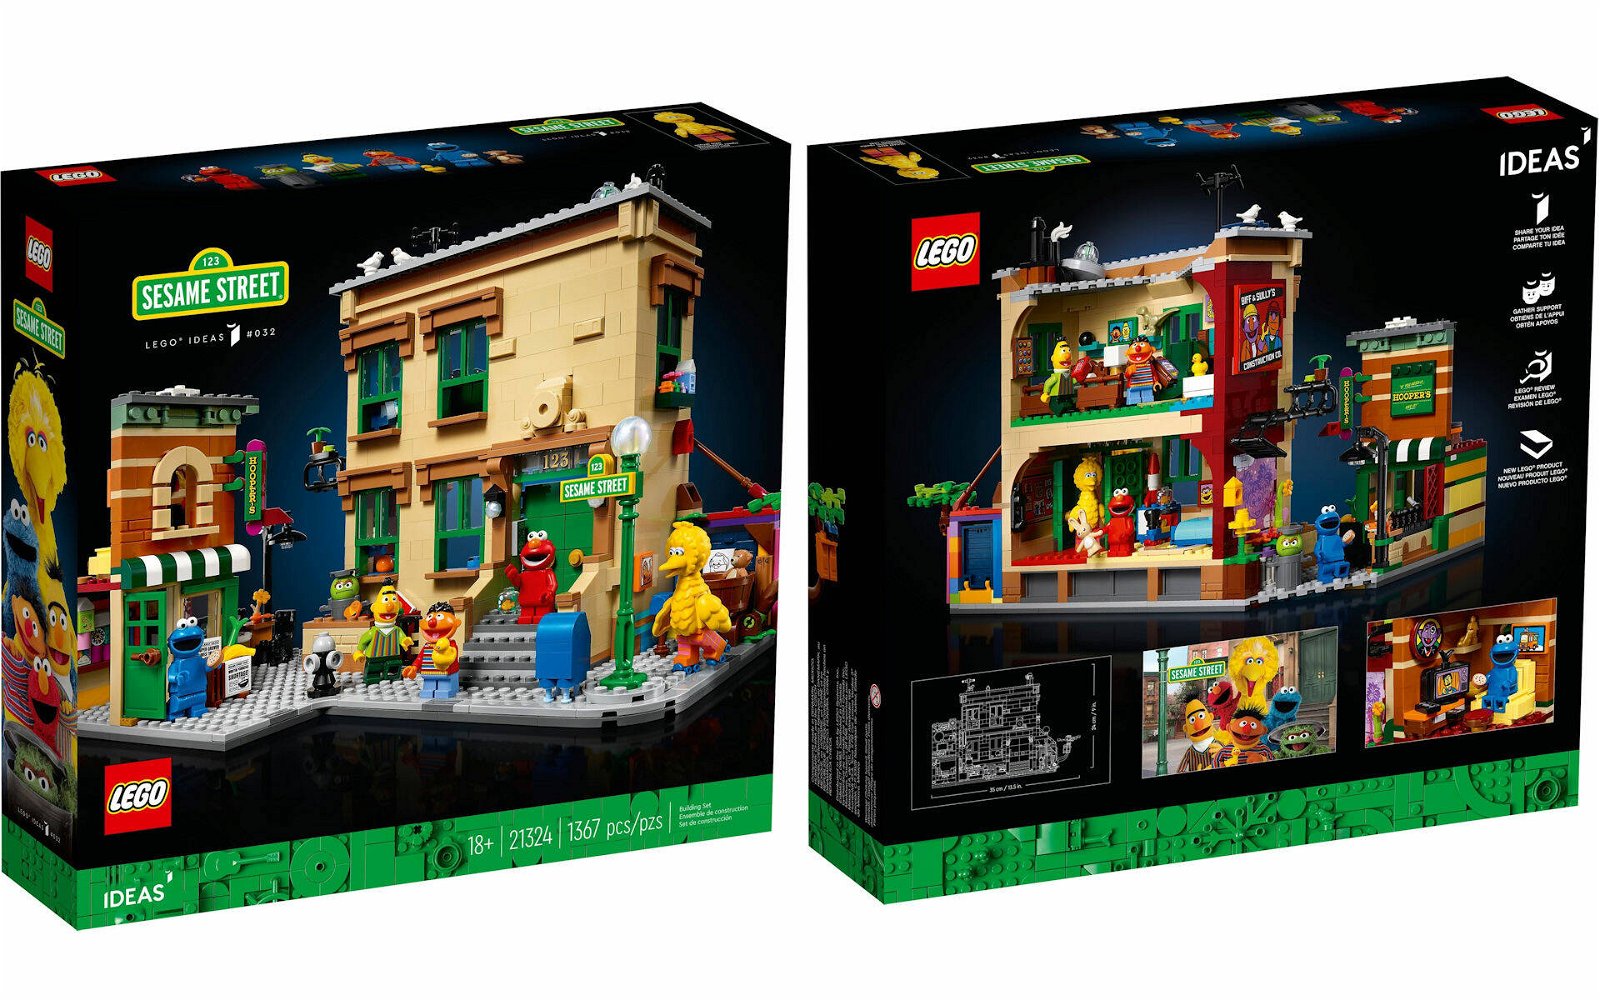 Immagine di LEGO: presentato il nuovo set Ideas # 21324 “123 SESAME STREET”